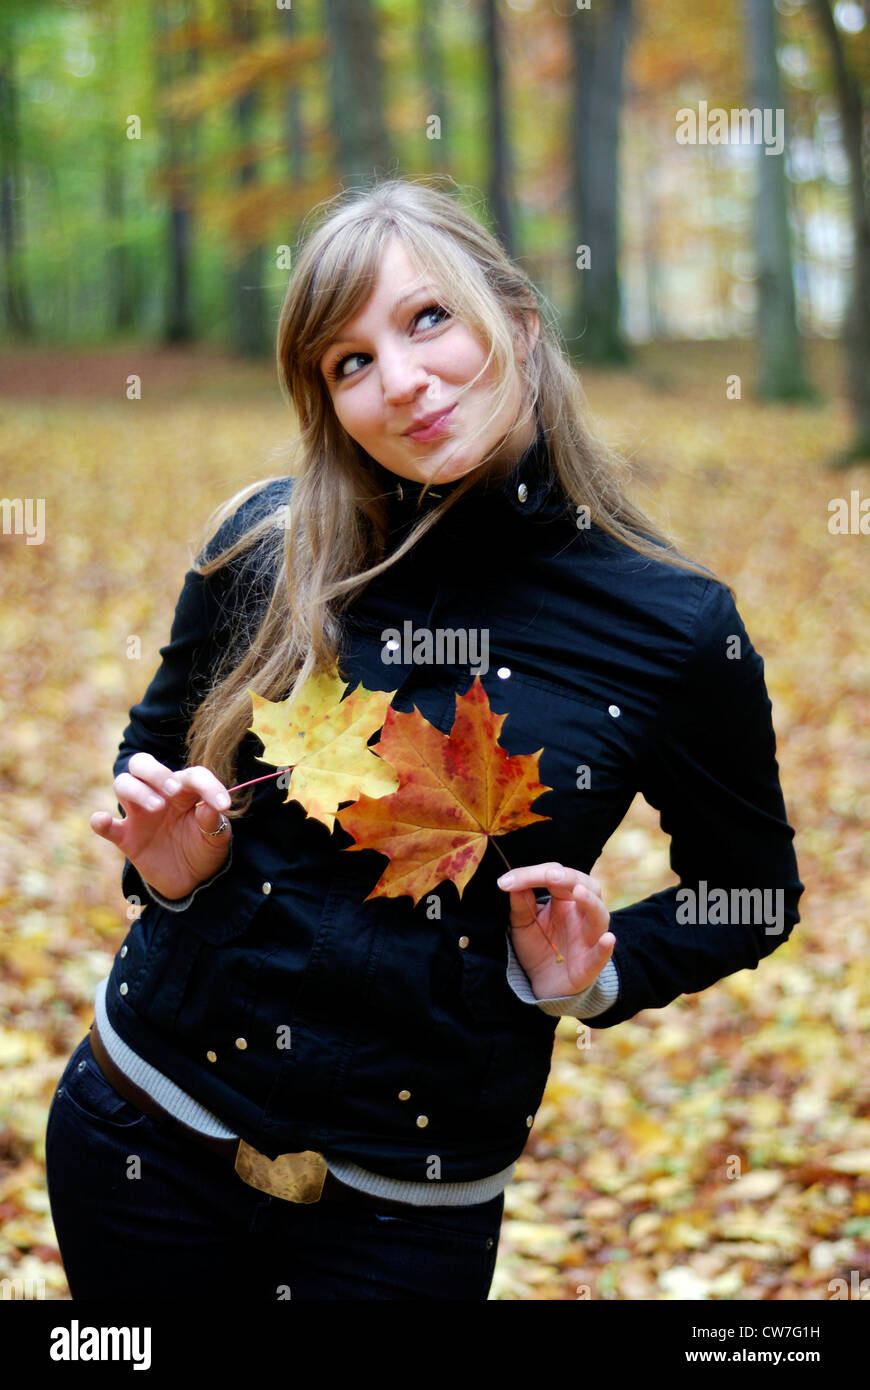 Belle jeune fille en forêt, avec des feuilles en avant de son corps Banque D'Images